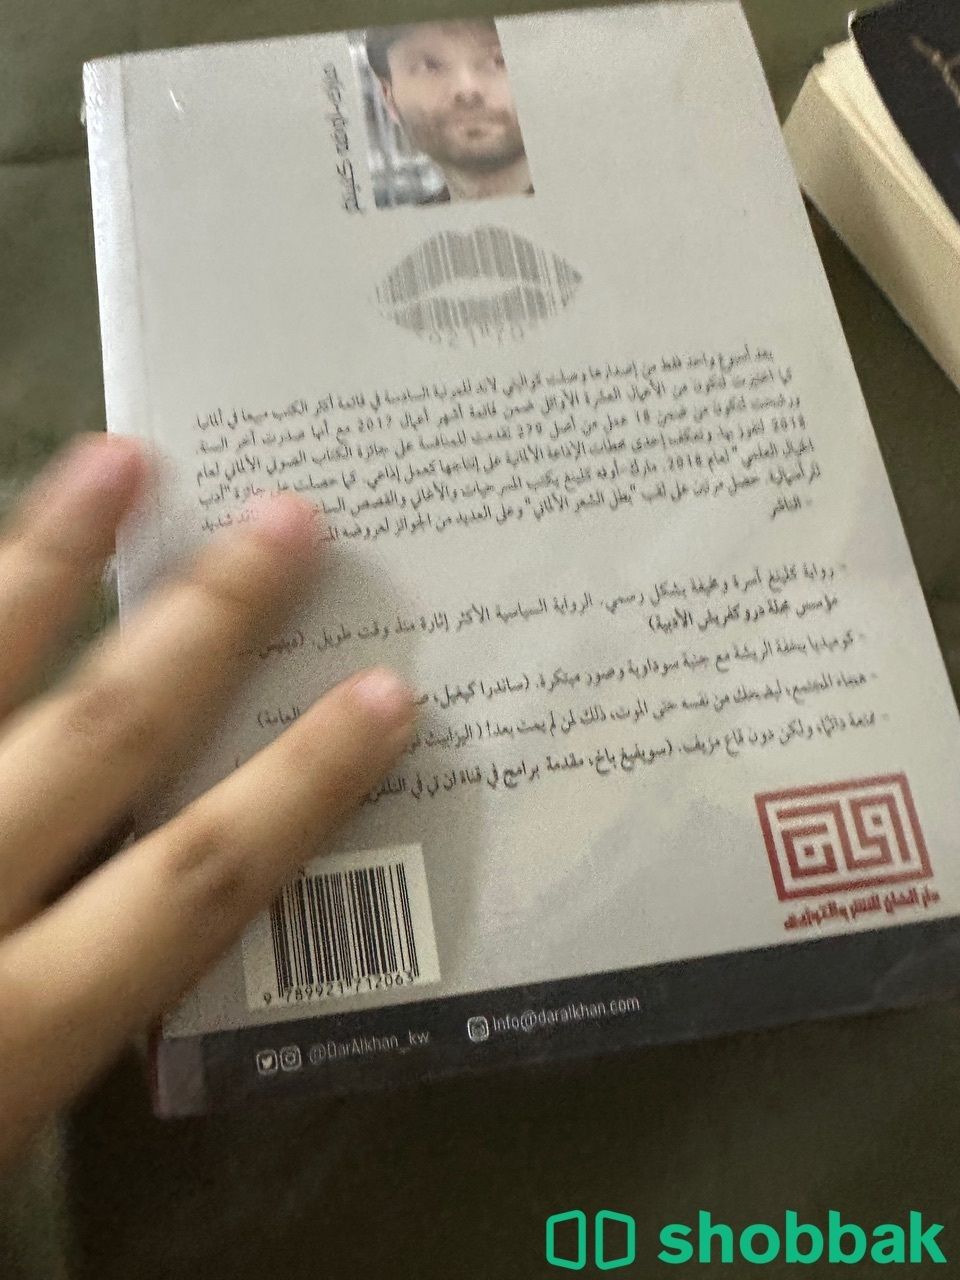 كتب جديدة وروايات للبيع  Shobbak Saudi Arabia